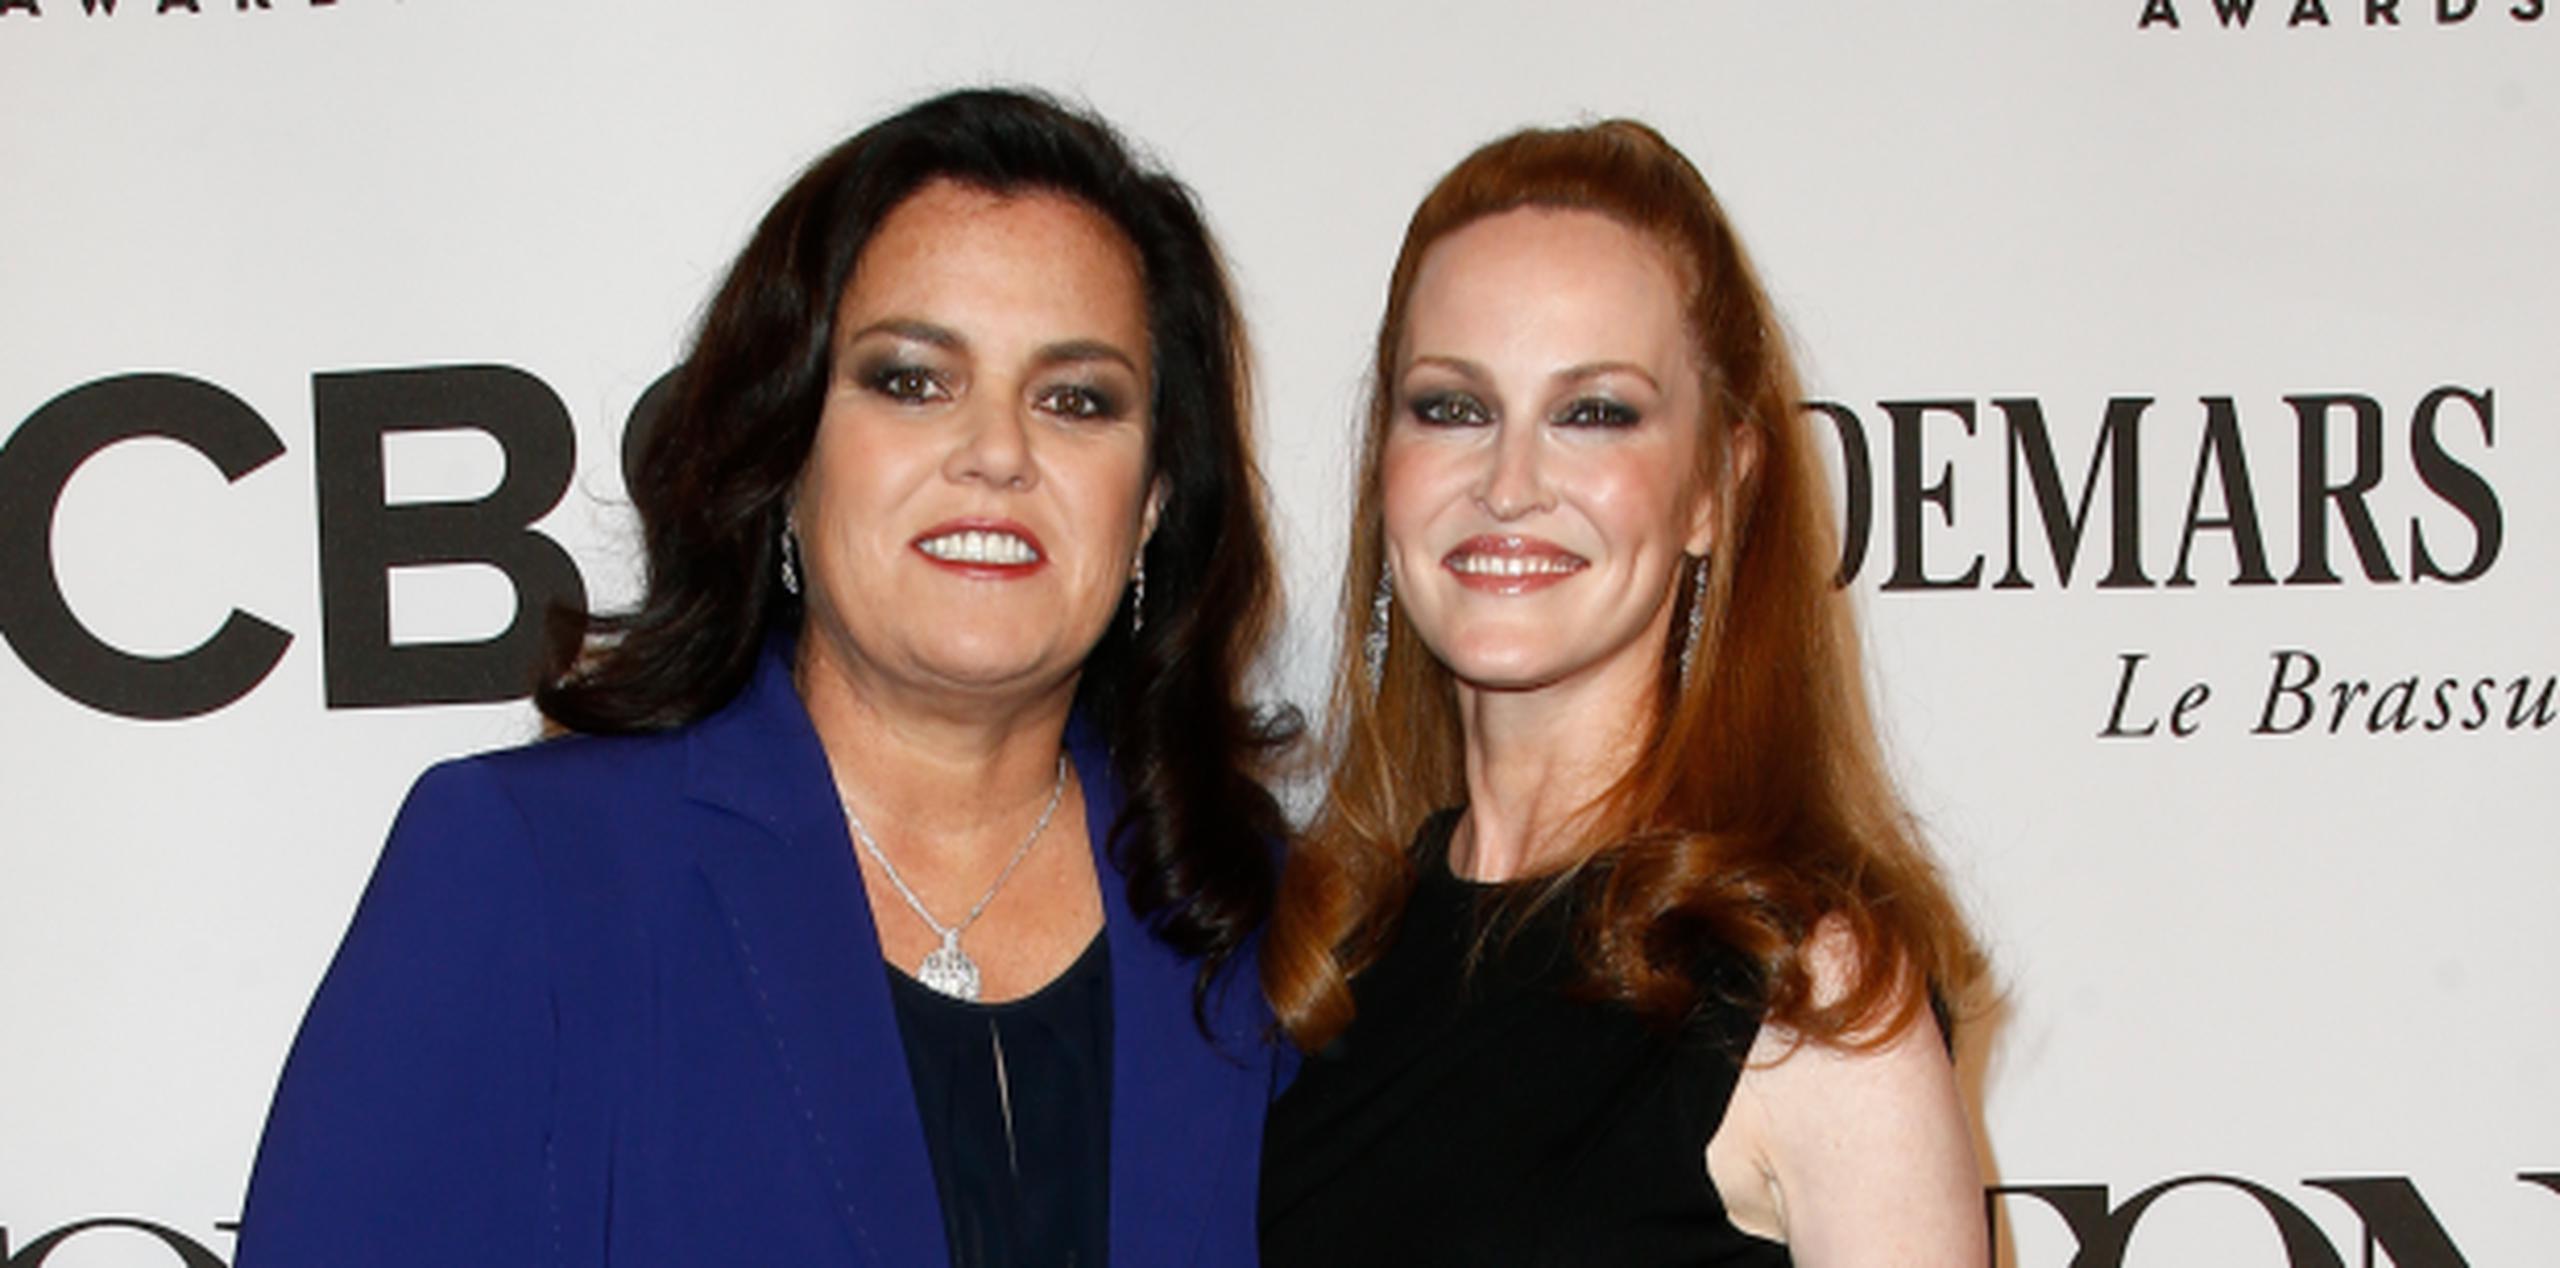 Rosie O'Donnell -a la izquierda- comenzó en febrero de 2015 los trámites del divorcio. (Shutterstock)